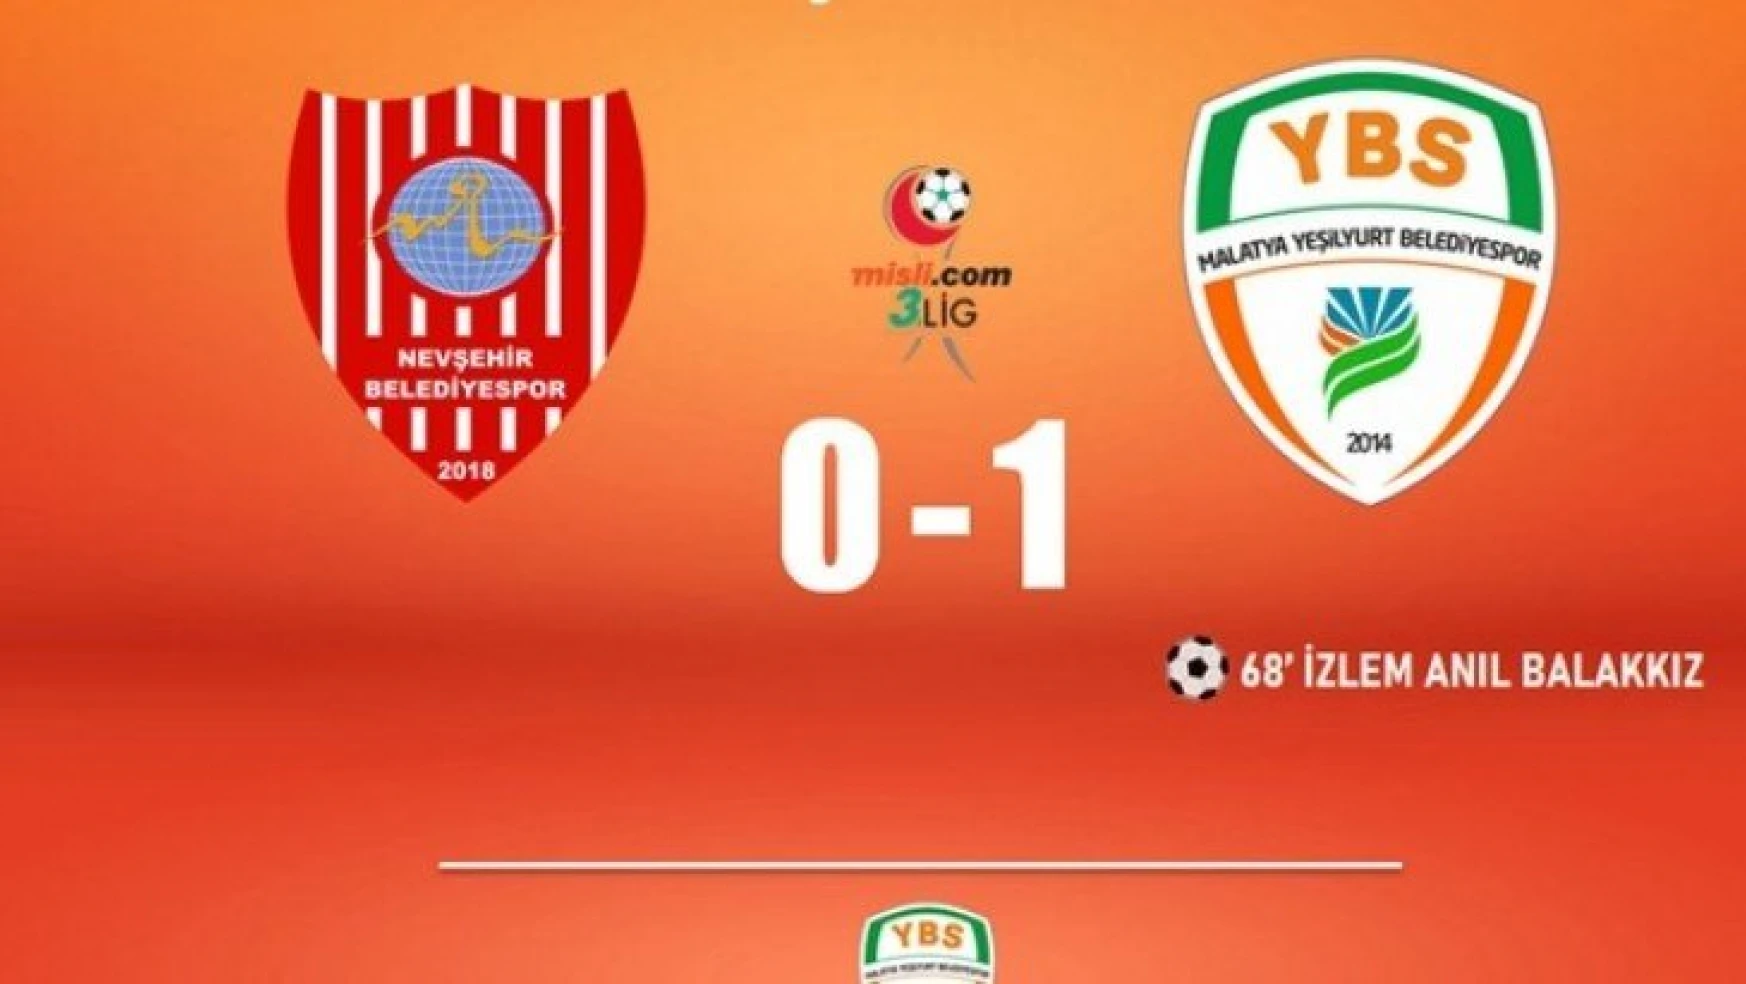 Nevşehir Belediyespor: 0 - Malatya Yeşilyurt Belediyespor: 1